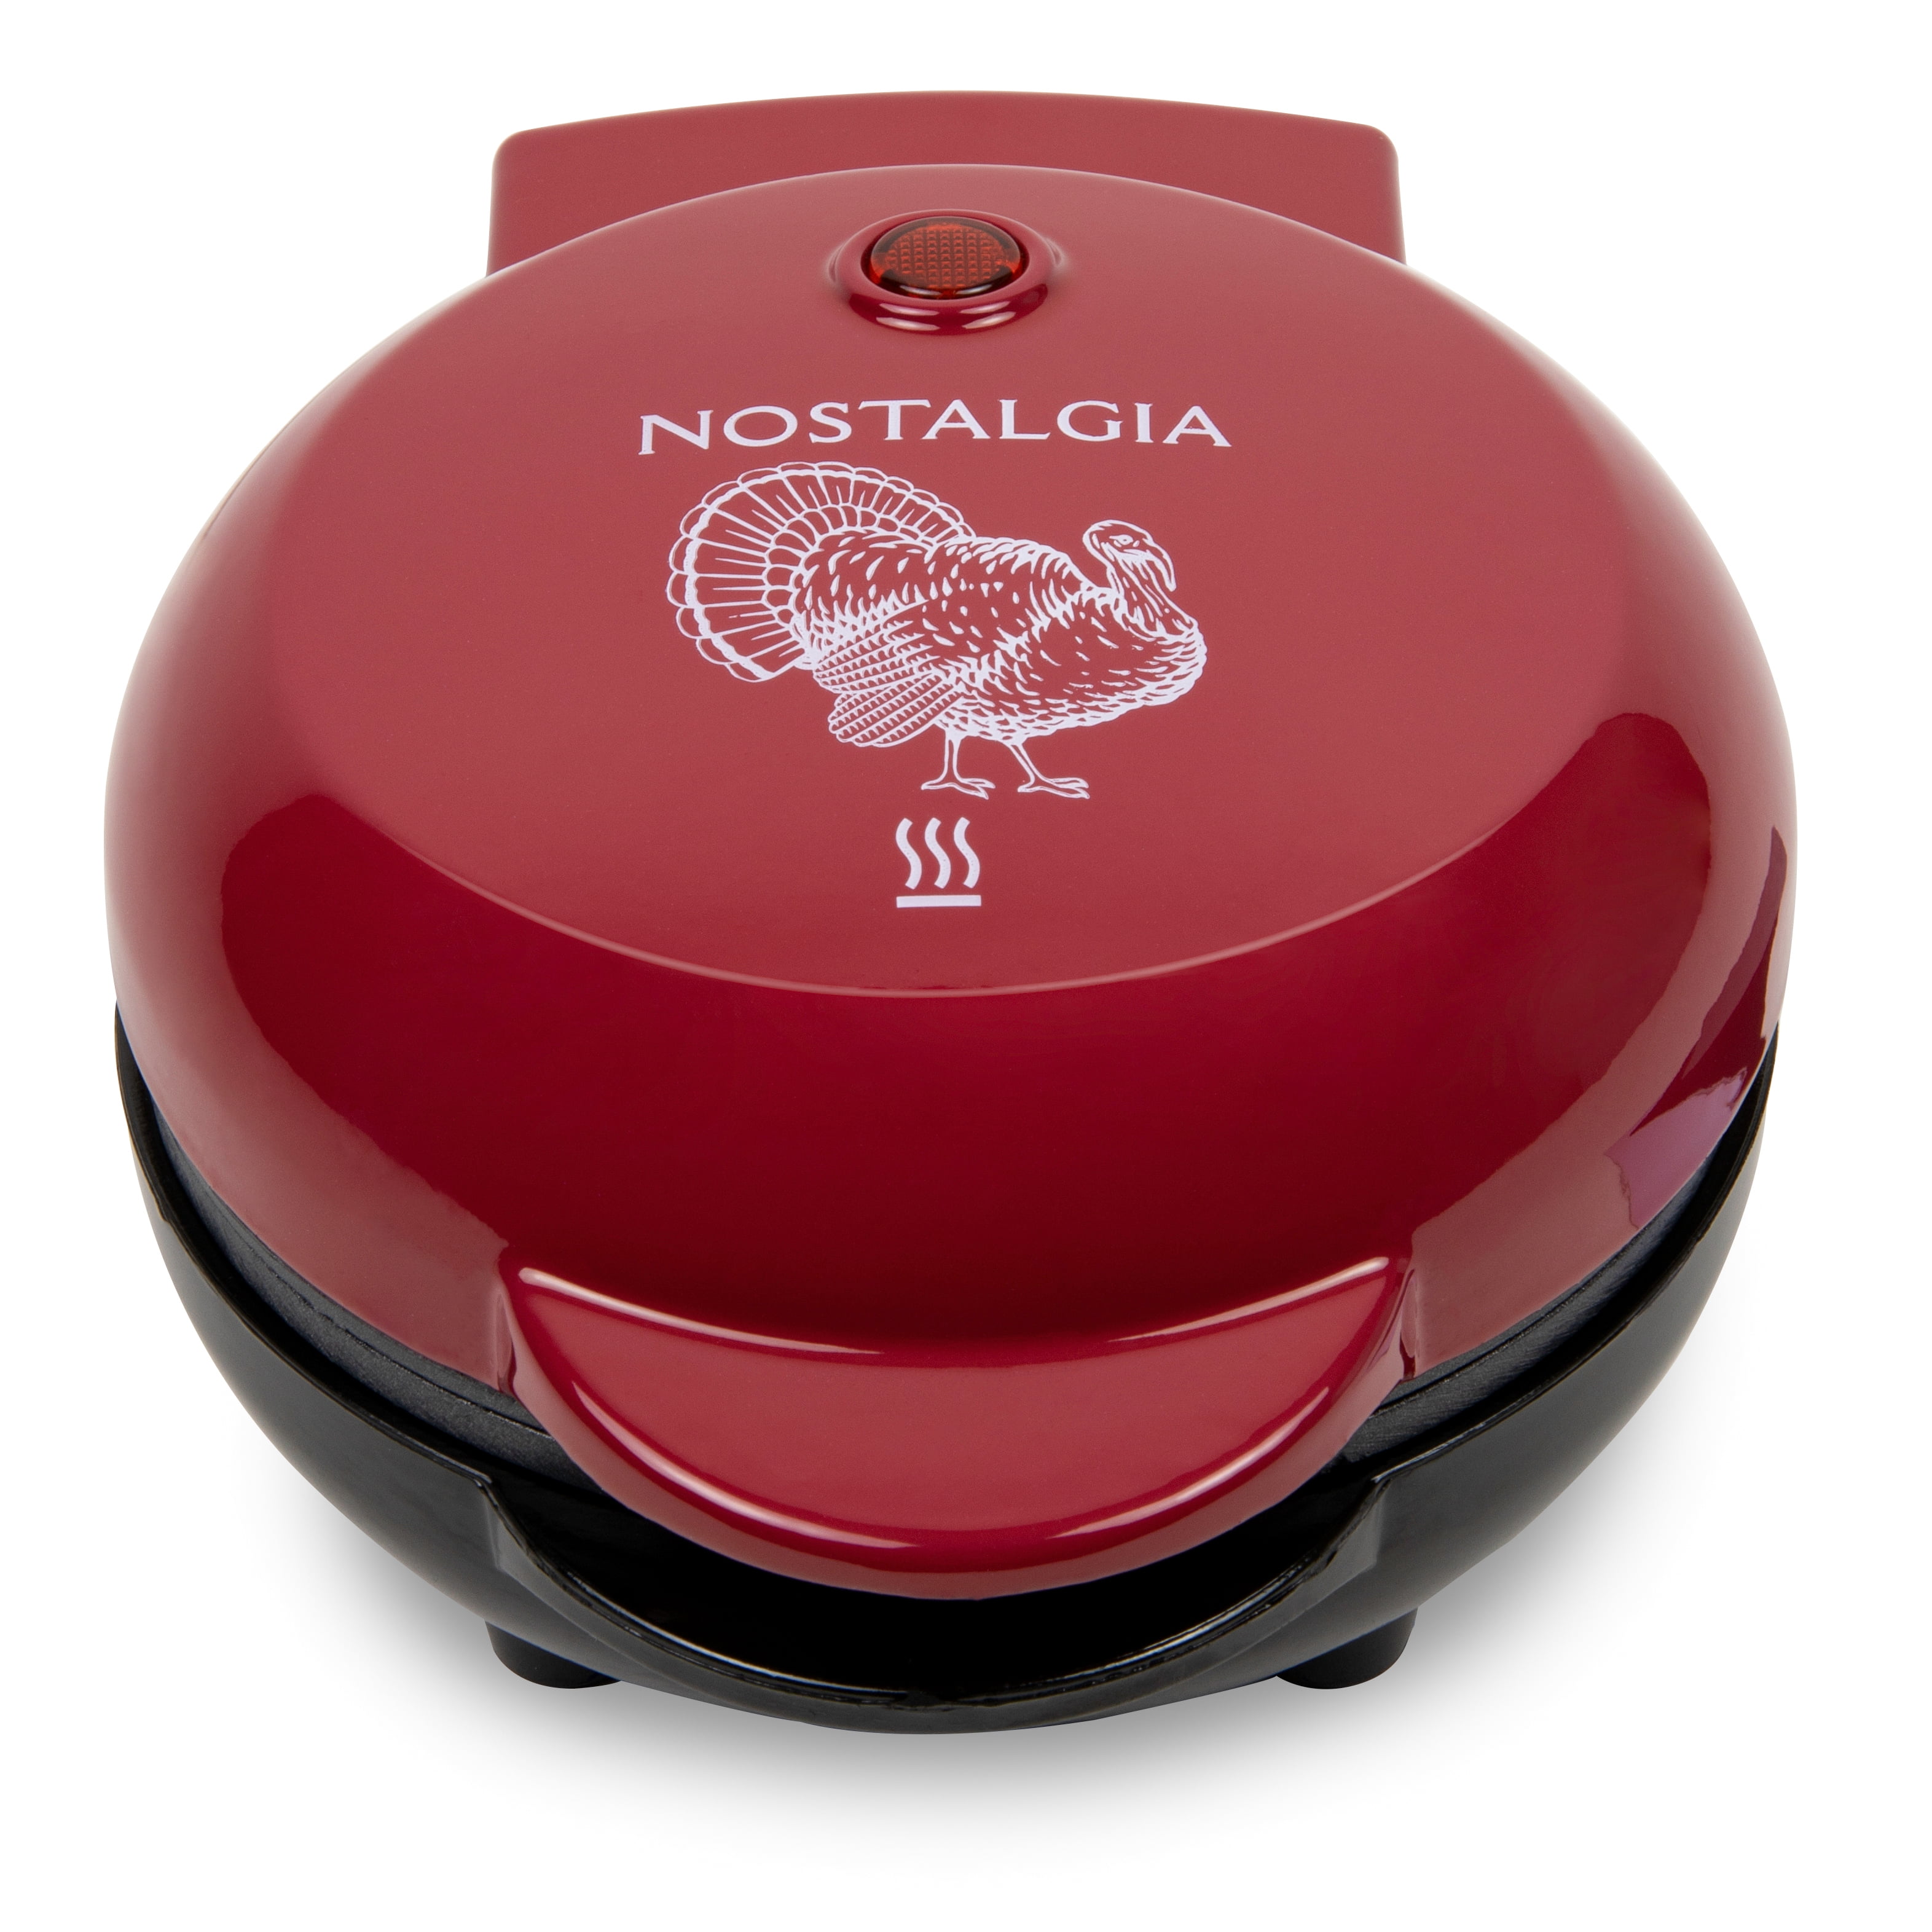 Nostalgia, Other, New Nostalgia Mini Waflera Turquesa Nostalgia Mymini  Waflera Marke 5 Compacto